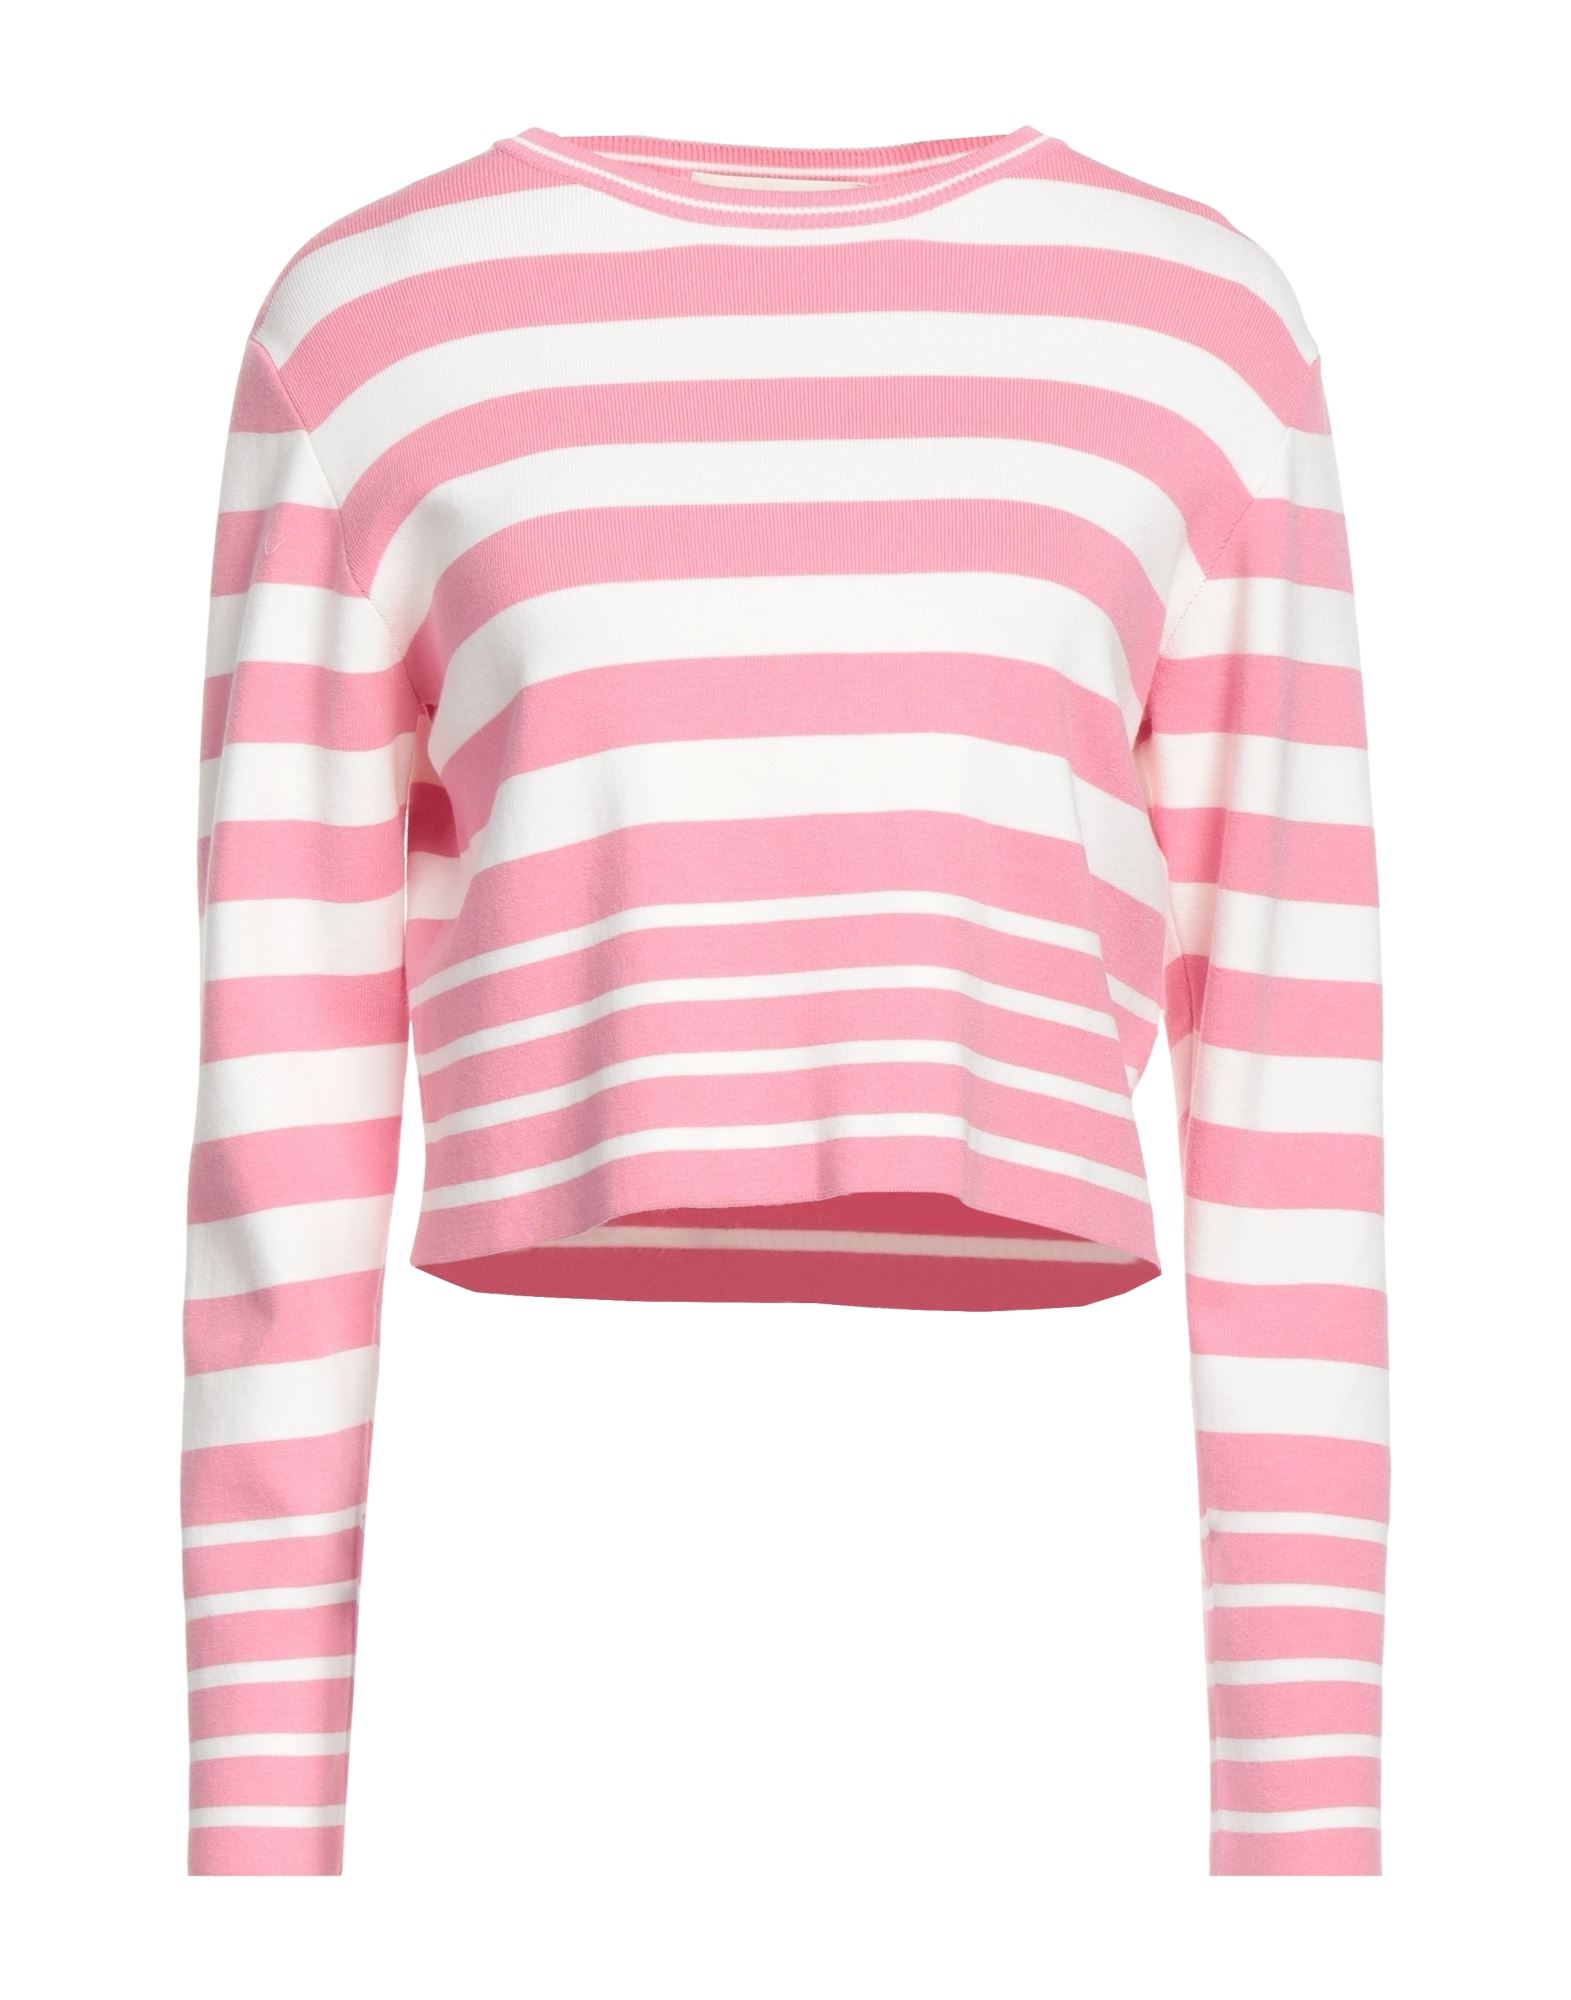 Kaos Sweaters In Pink